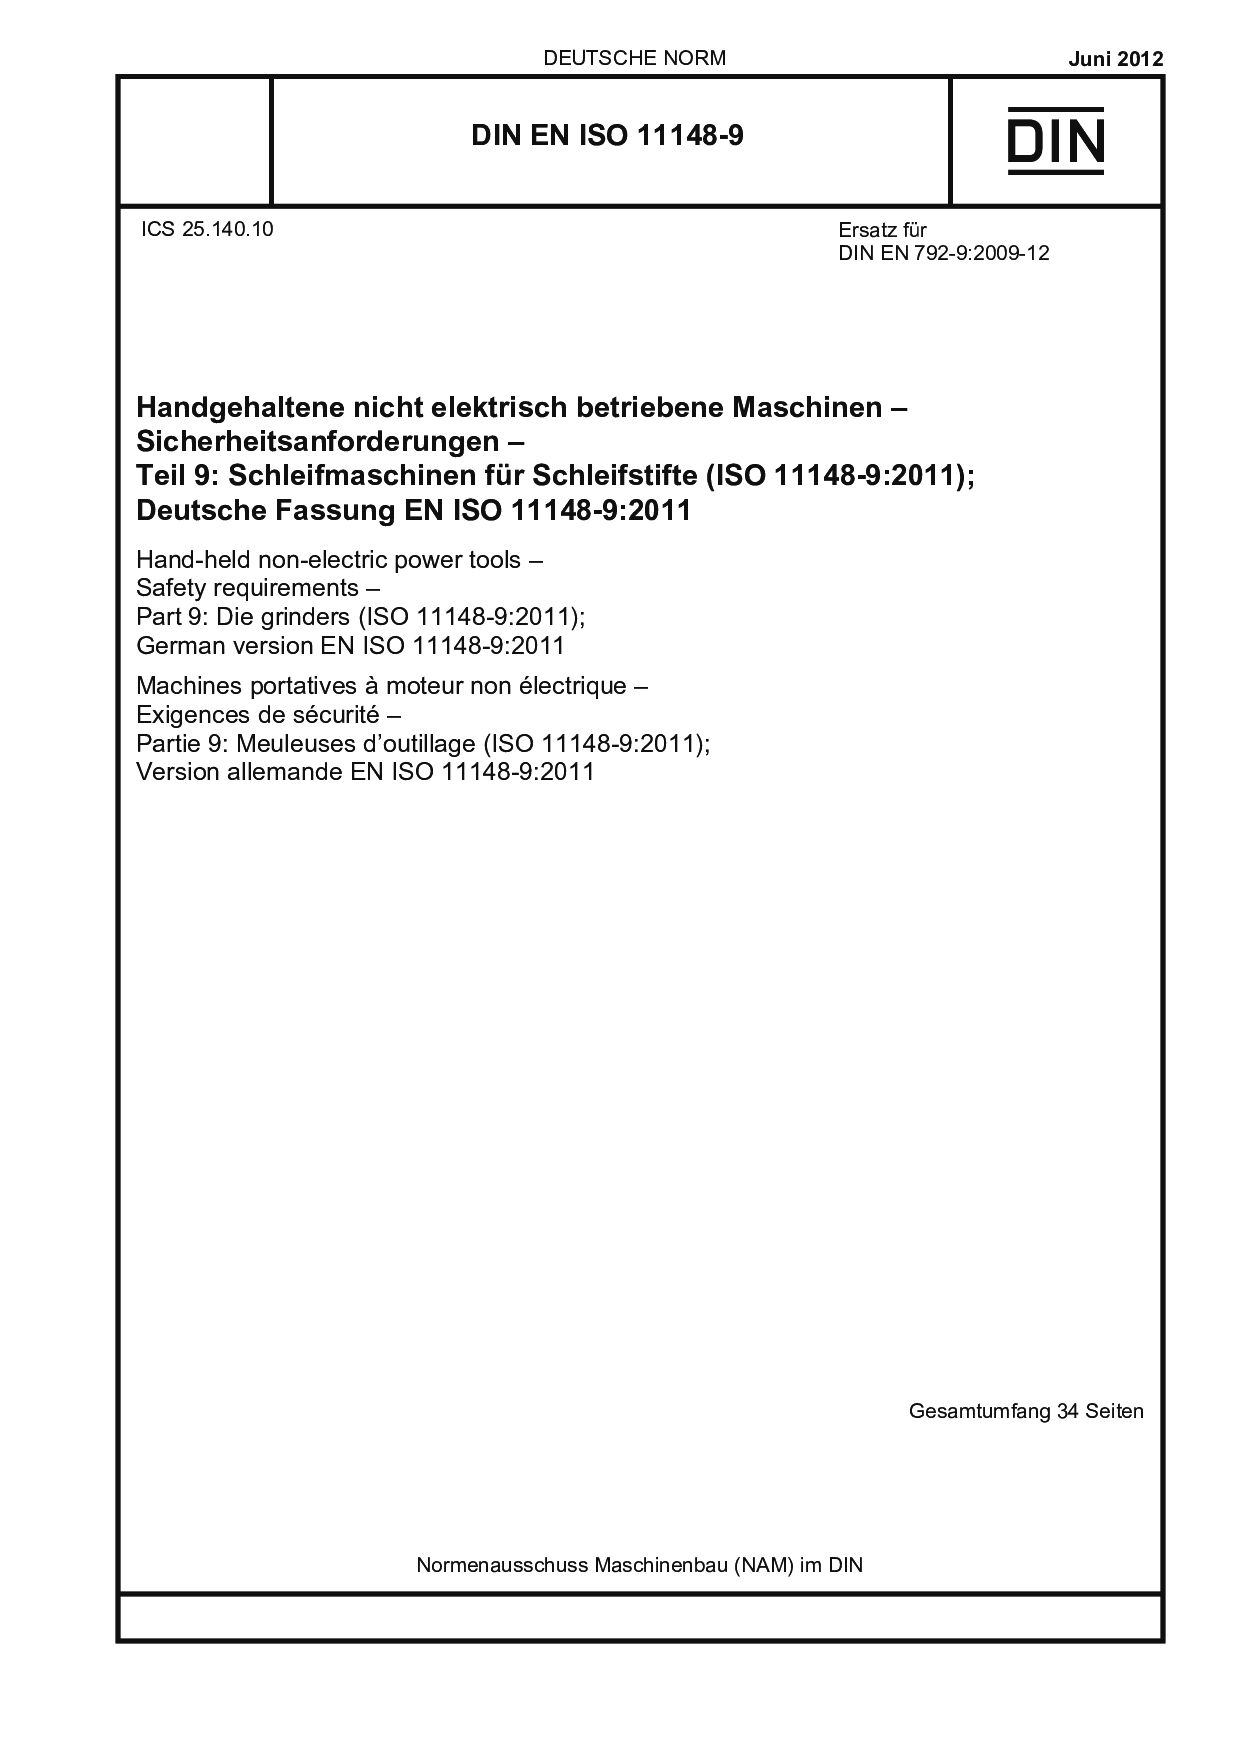 DIN EN ISO 11148-9:2012